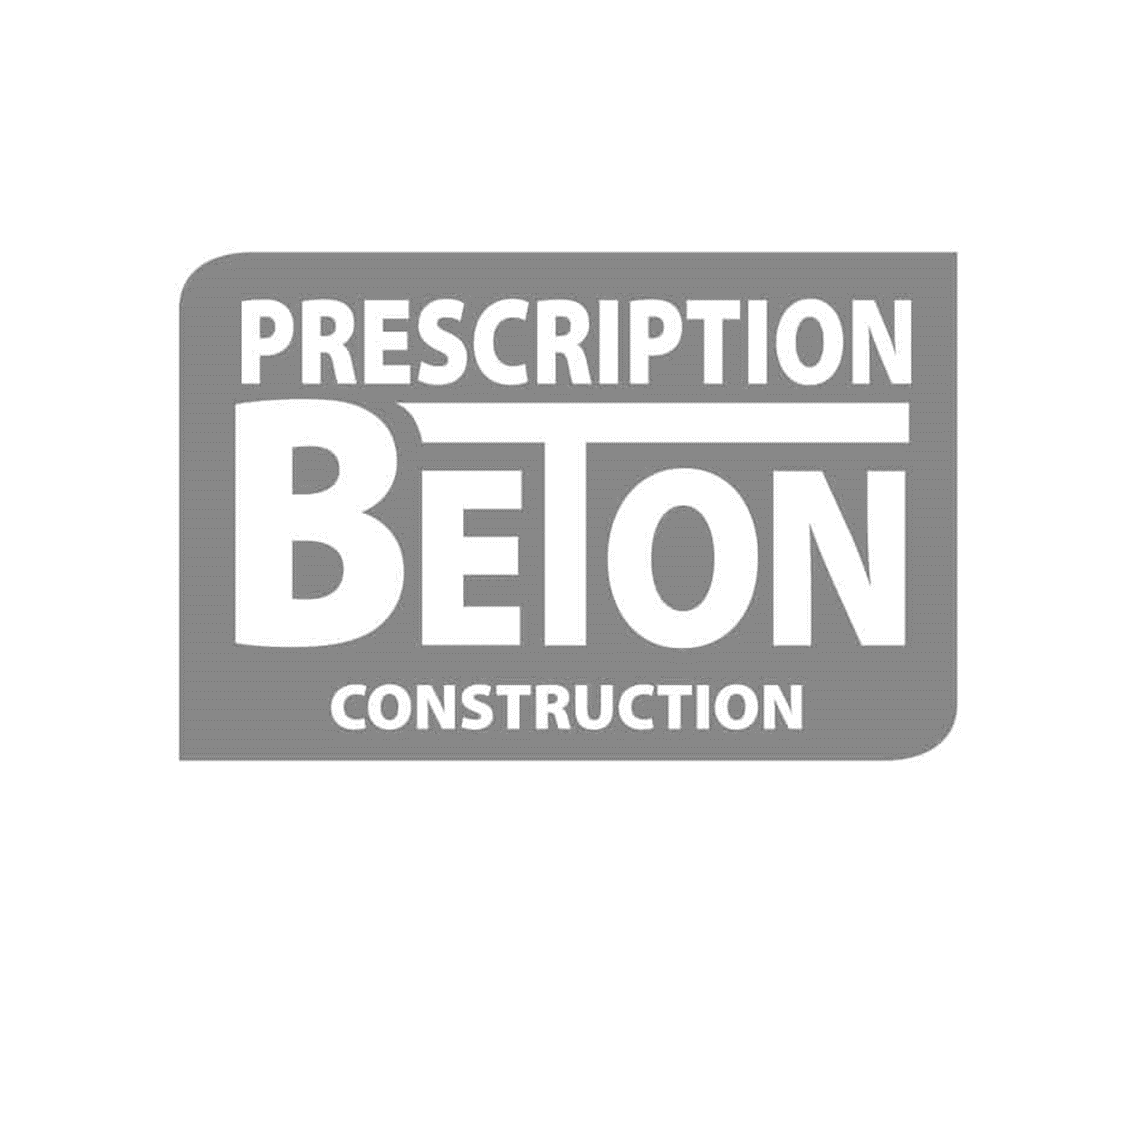 Prescription beton